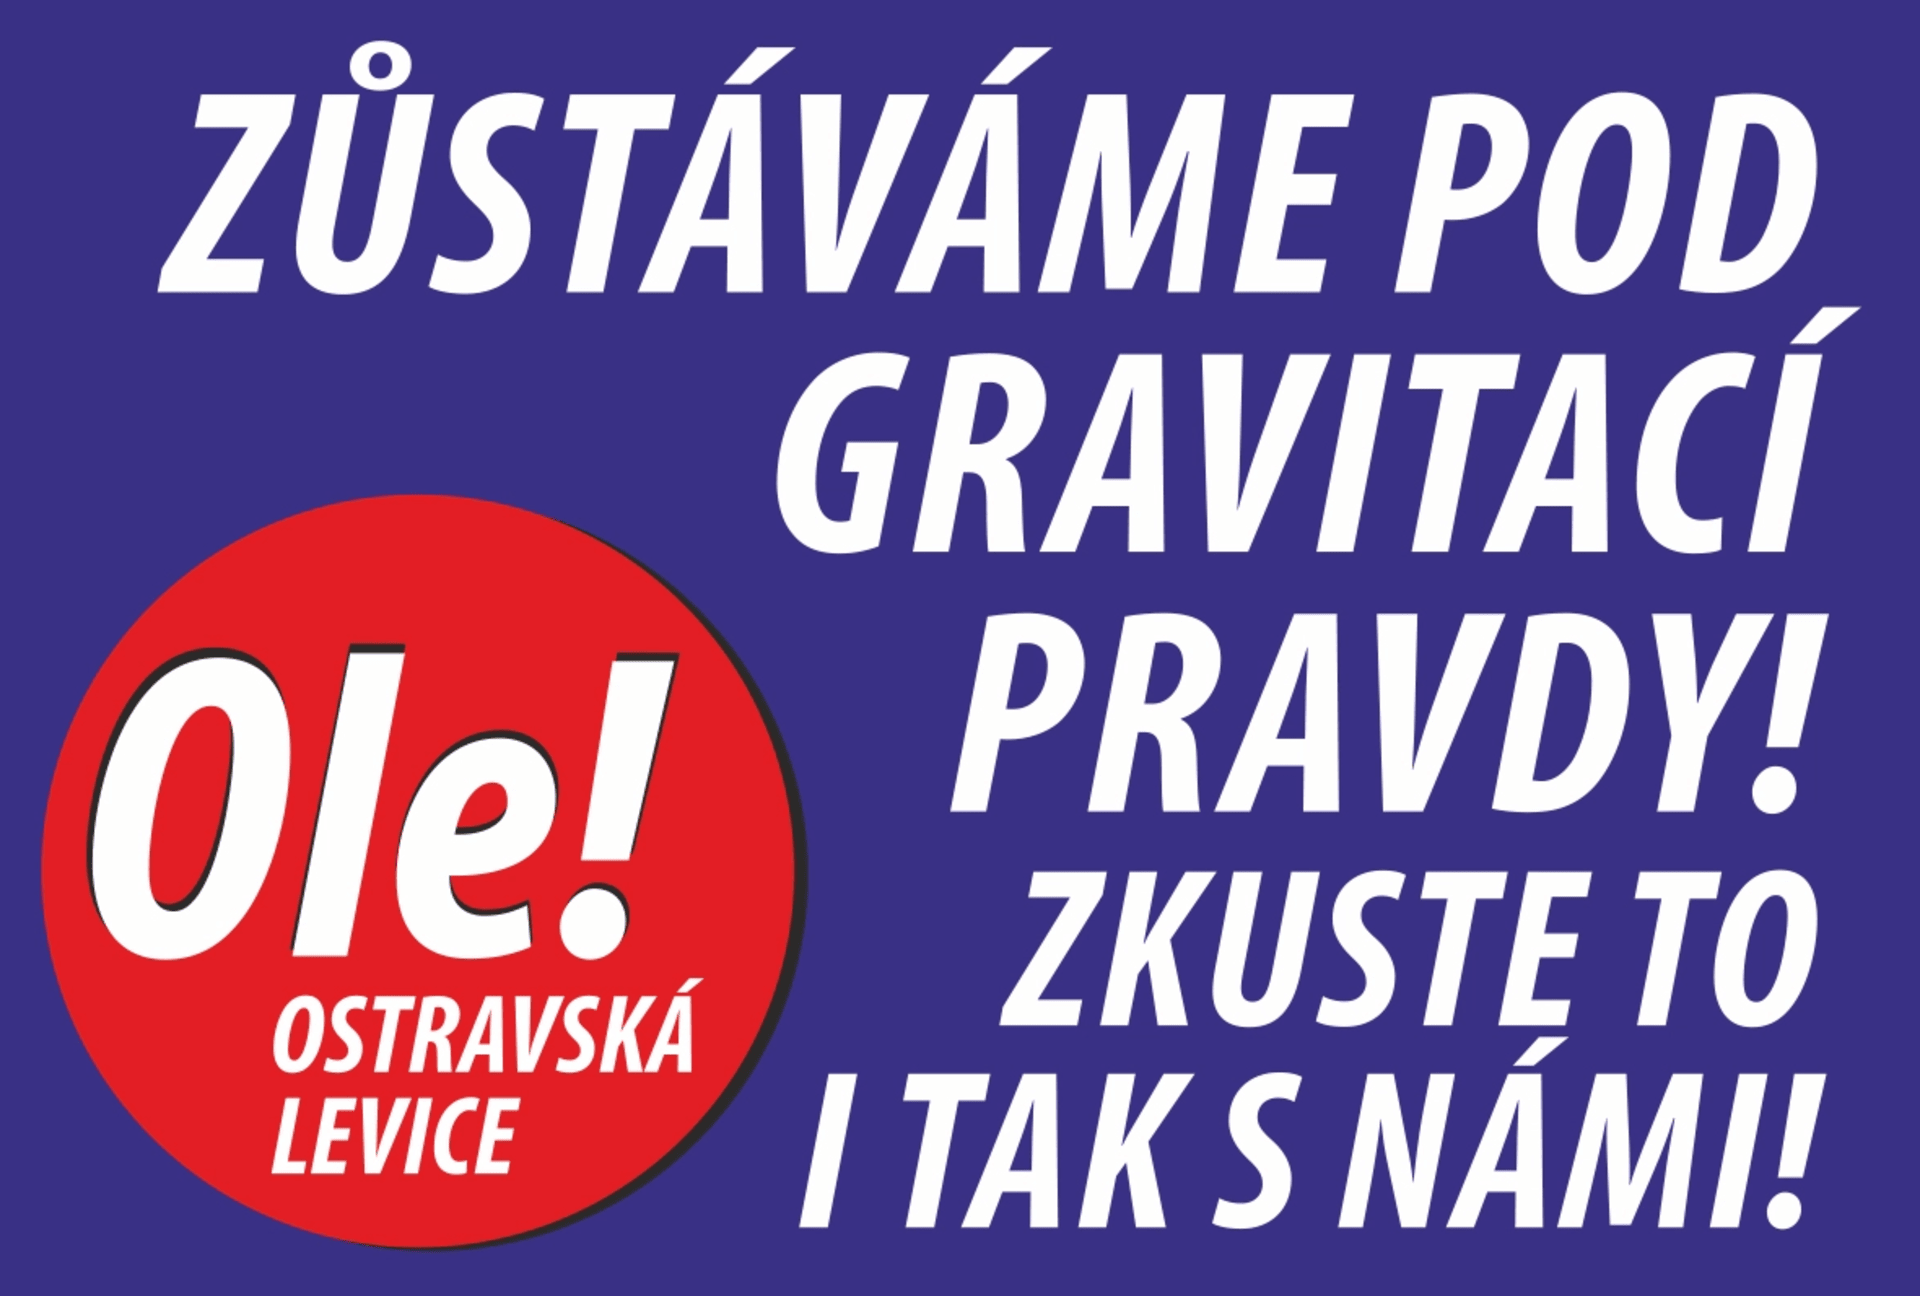 S heslem, které asi u voličů nebude příliš úspěšné, vyrukovalo uskupení Ole!, tedy Ostravská levice, která mimo jiné zaštituje zejména členy KSČM.